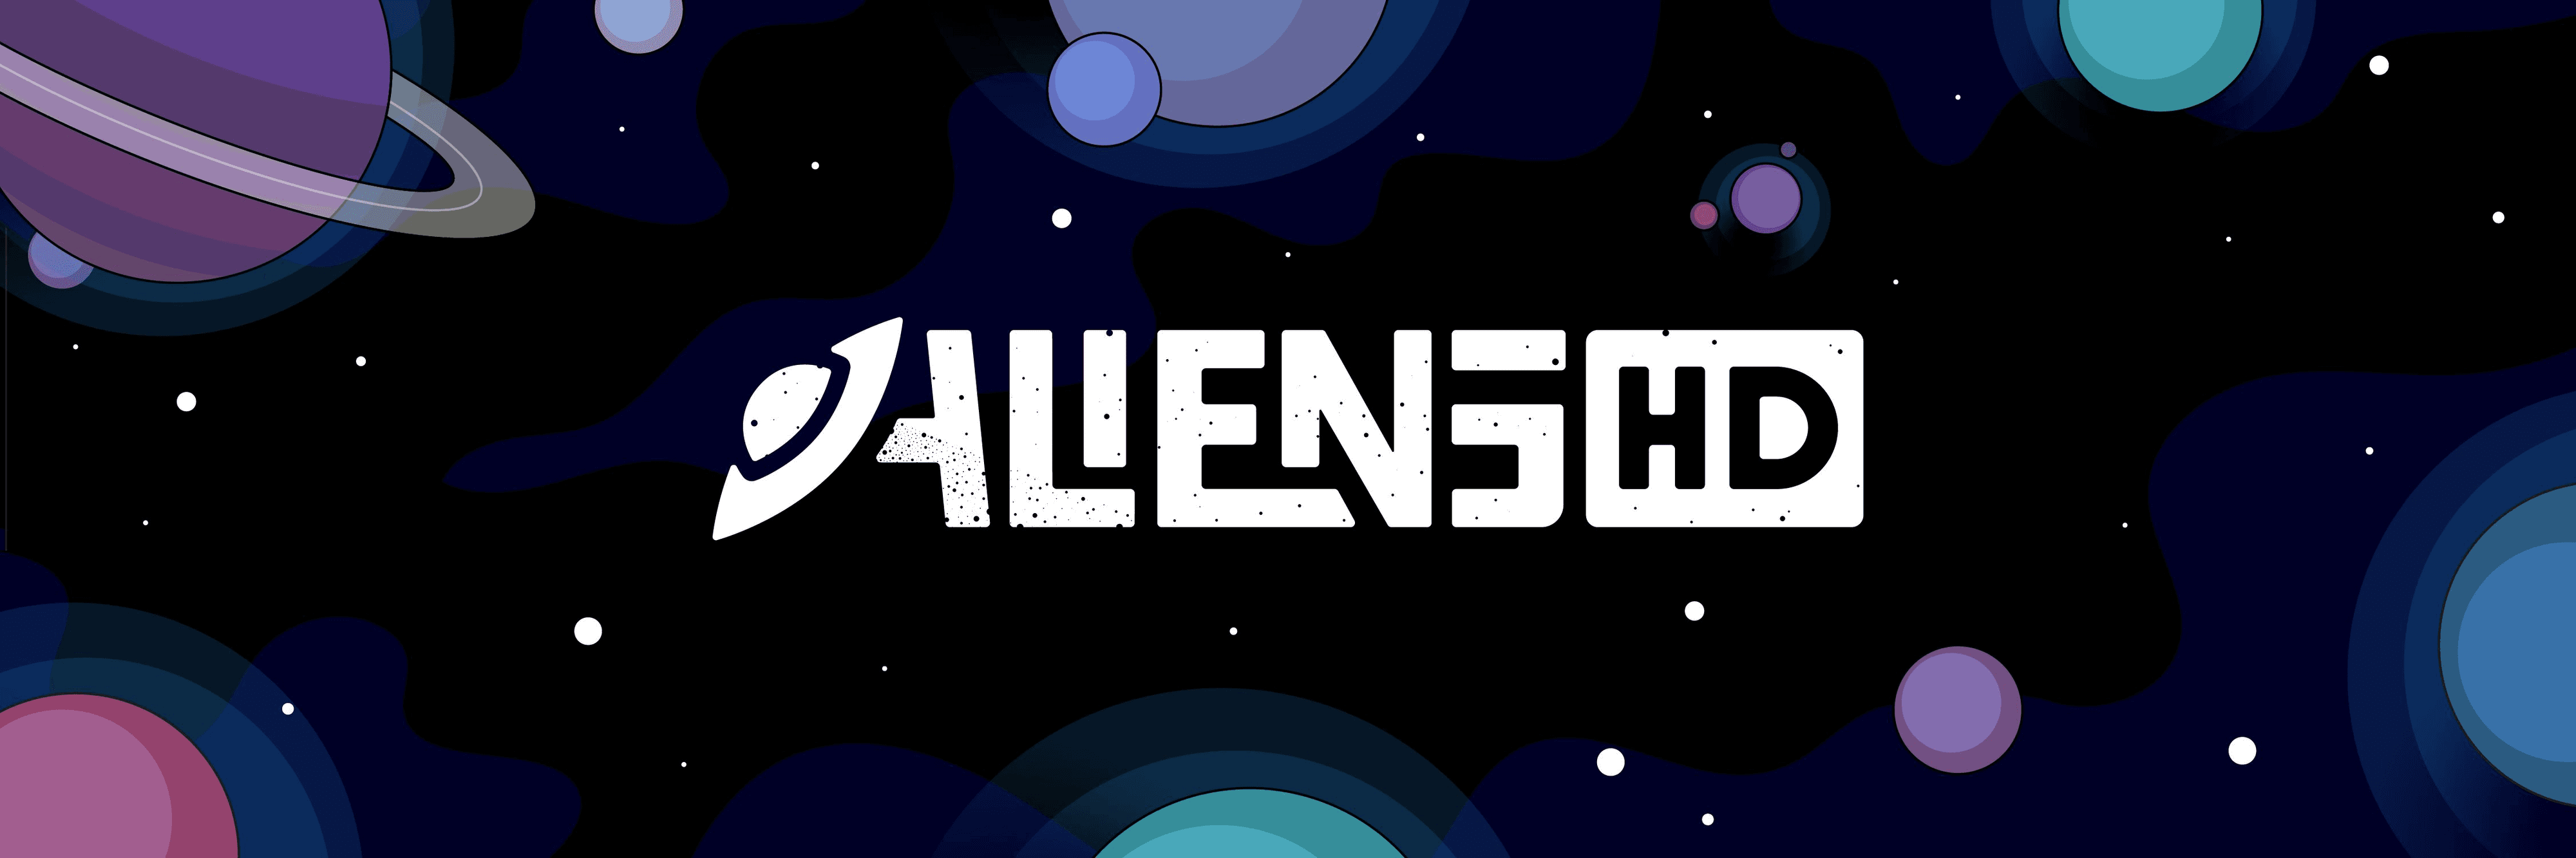 AlienStarCloud 横幅